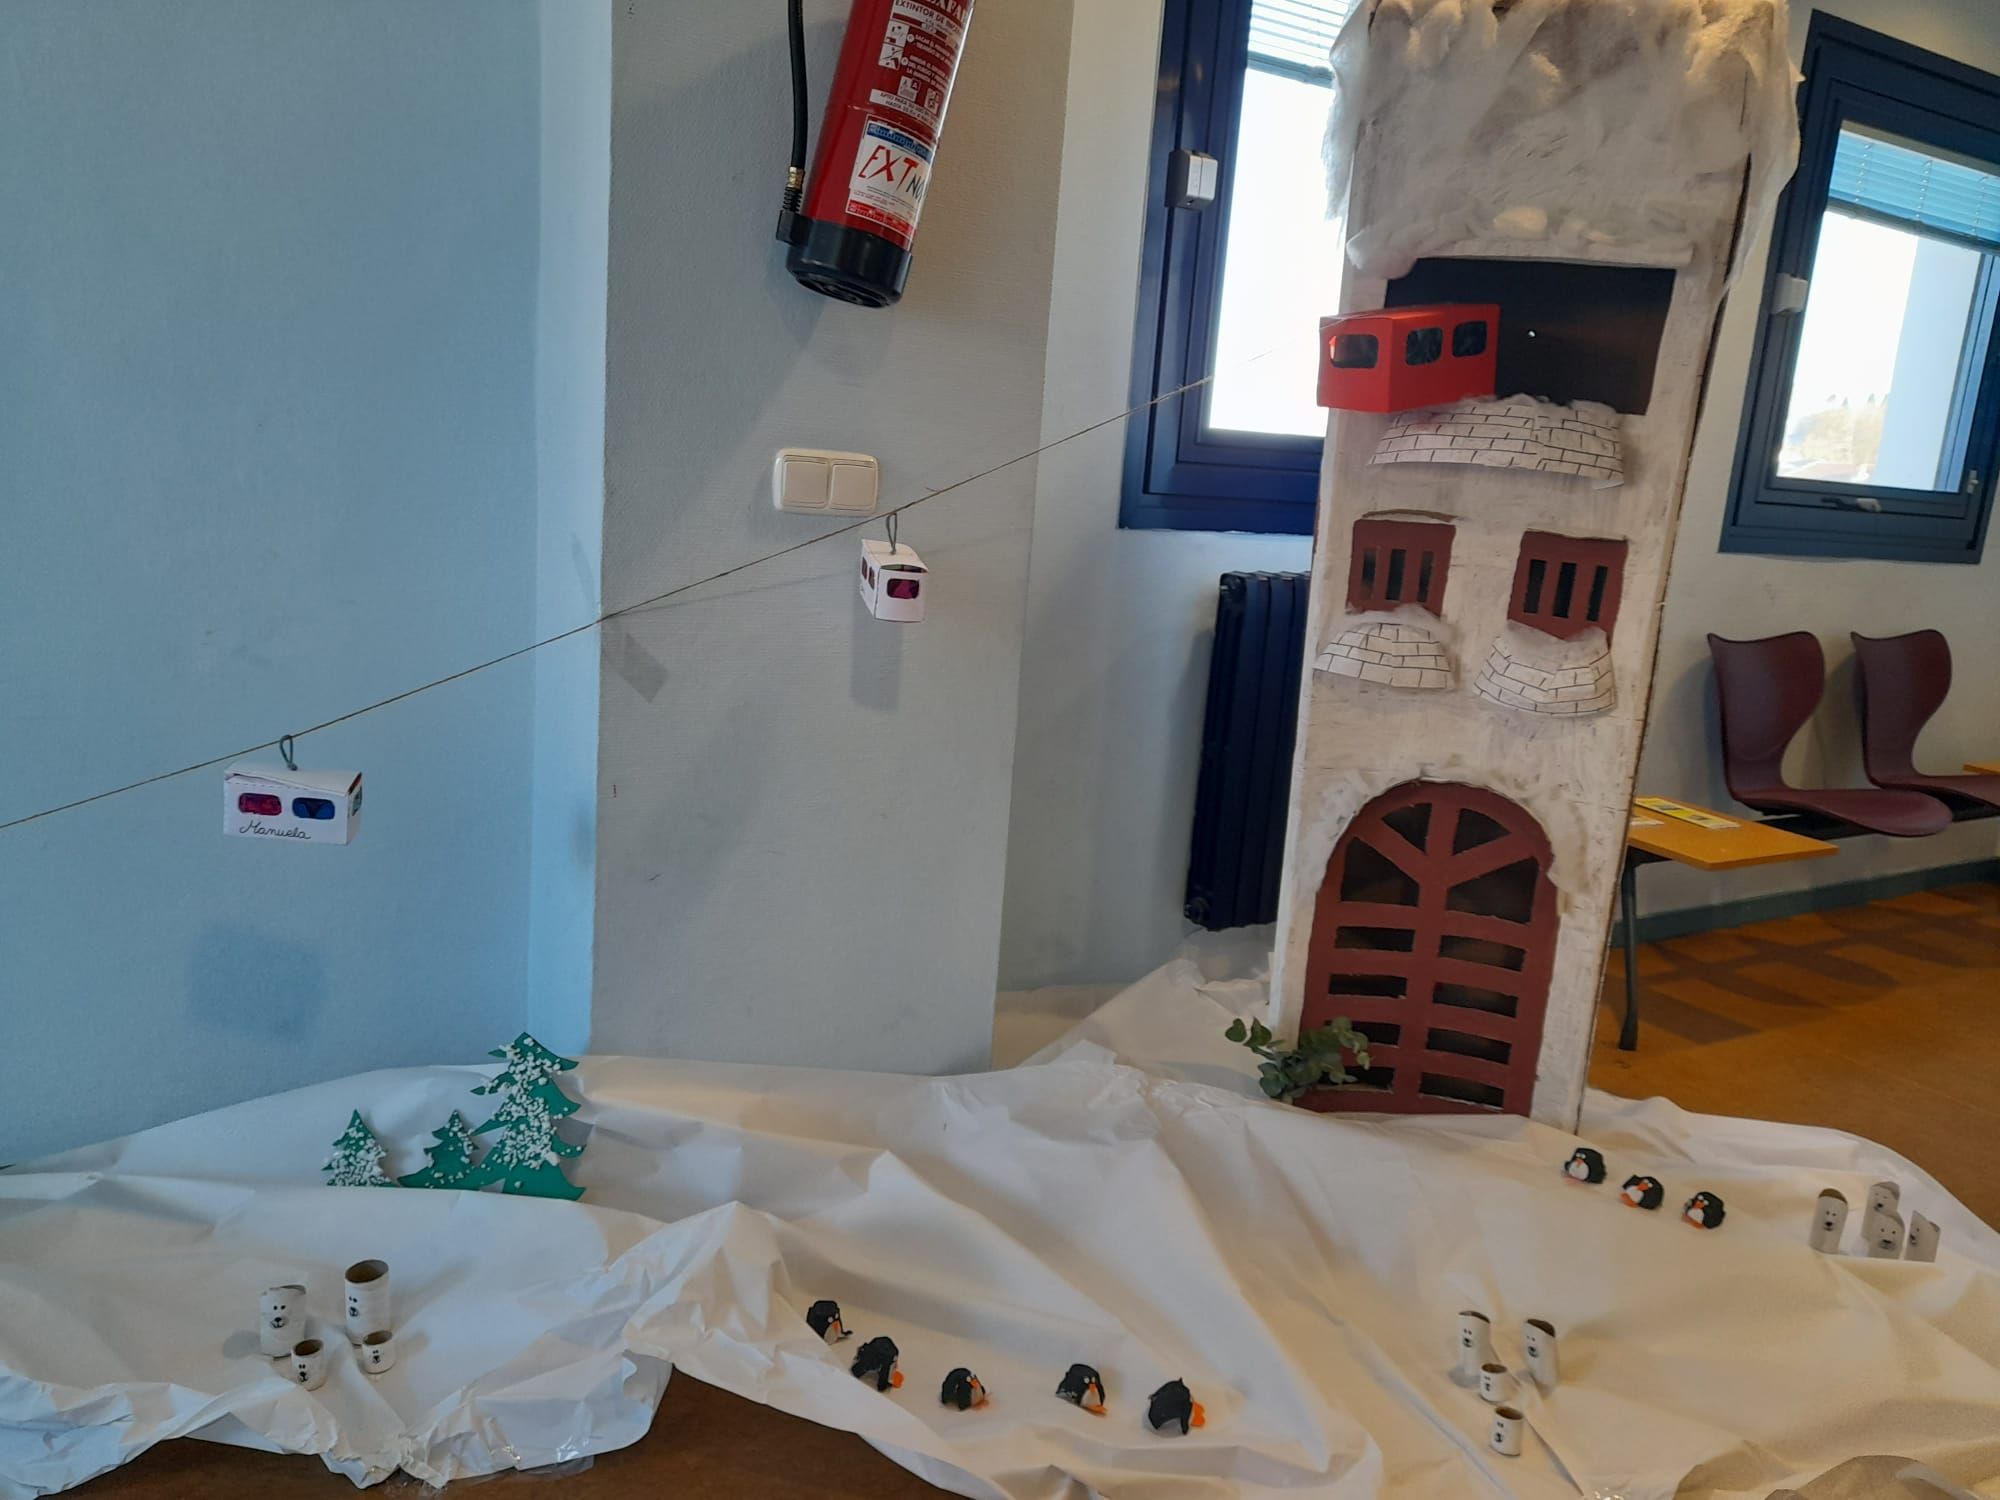 Así es la decoración navideña de Nava: trineos y teleféricos con los alumnos como protagonistas